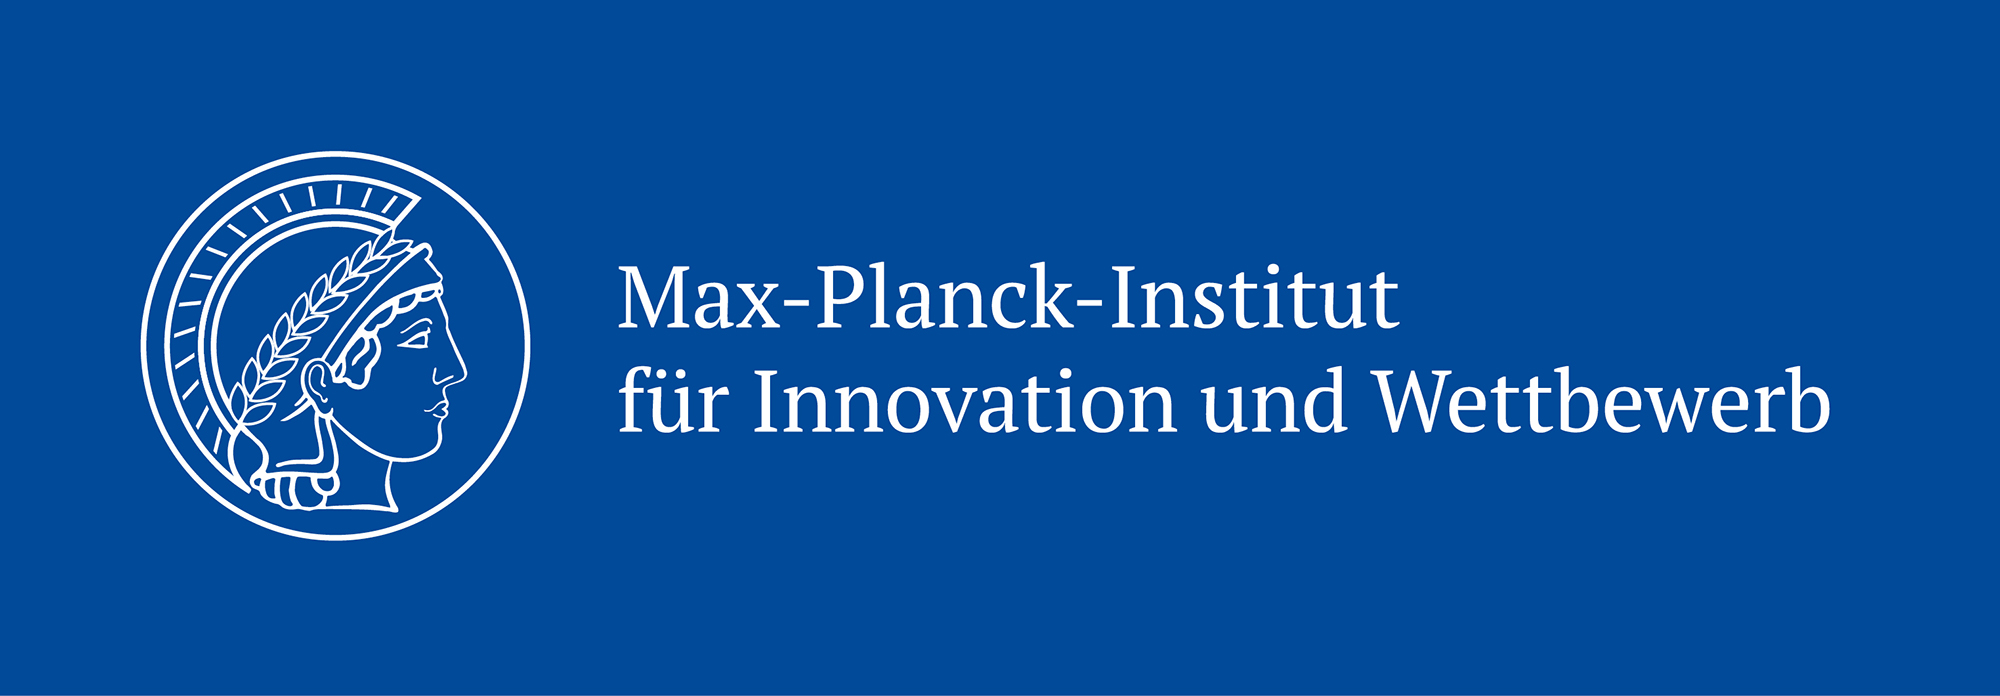 Max-Planck-Institut für Innovation und Wettbewerb nimmt Stellung zur Reform des Urheberrechts